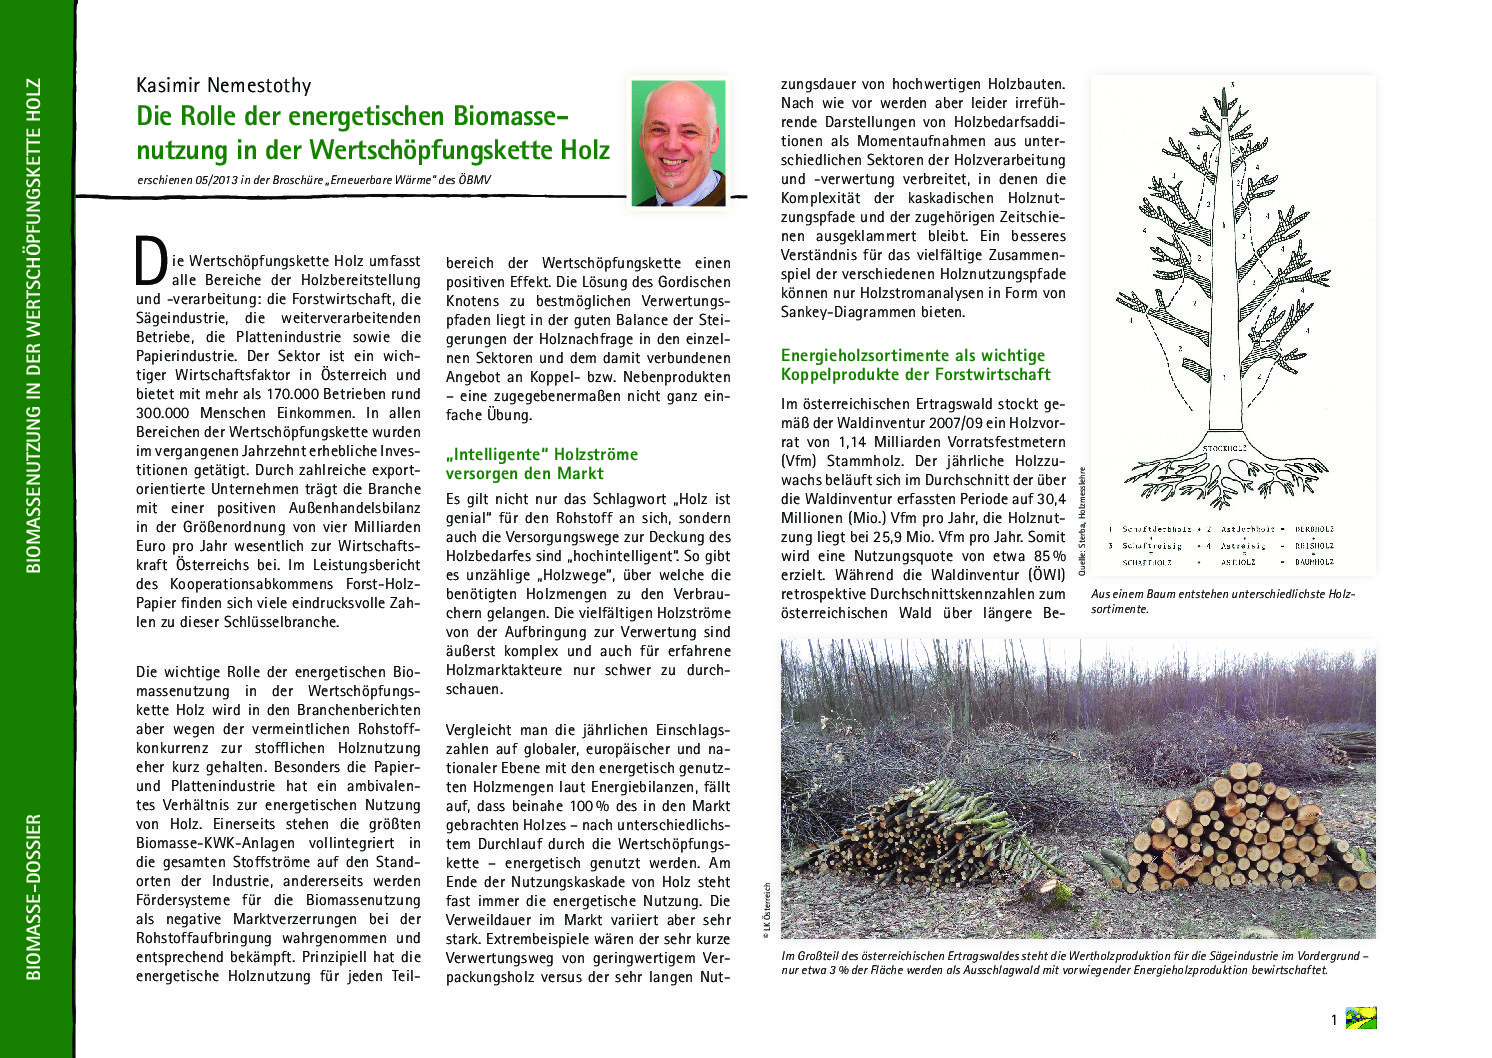 Die Rolle der energetischen Biomassenutzung in der Wertschöpfungskette Holz